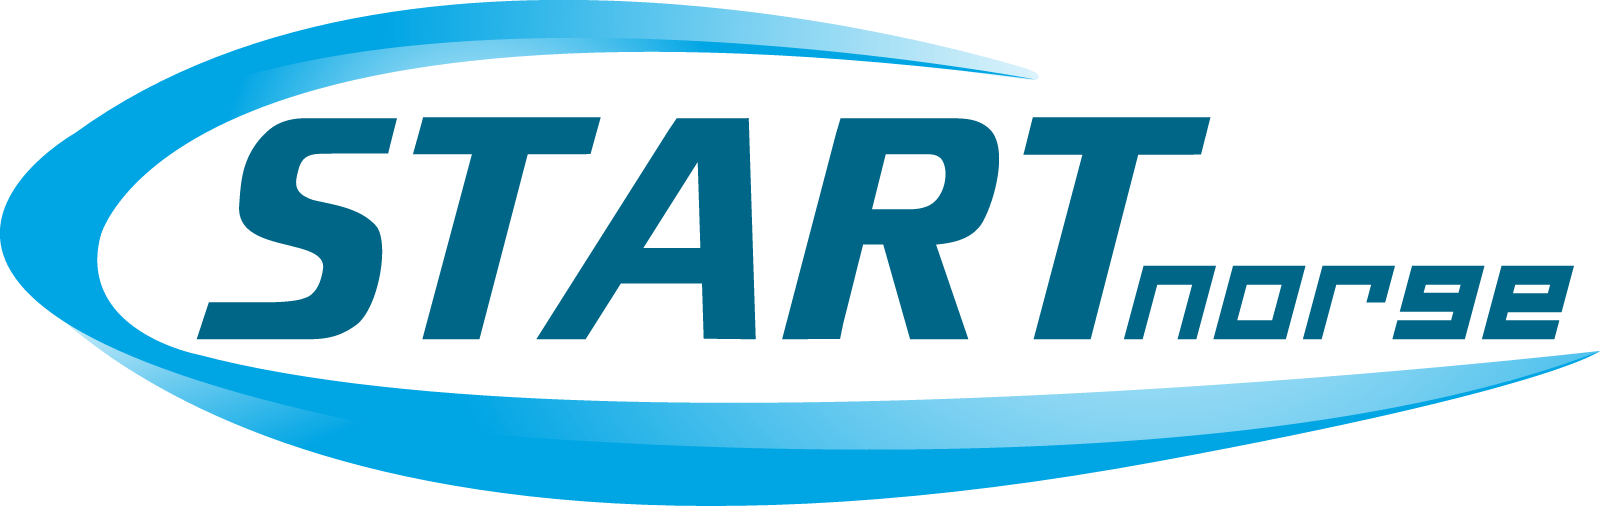 Start Logo - Start logo png 4 PNG Image